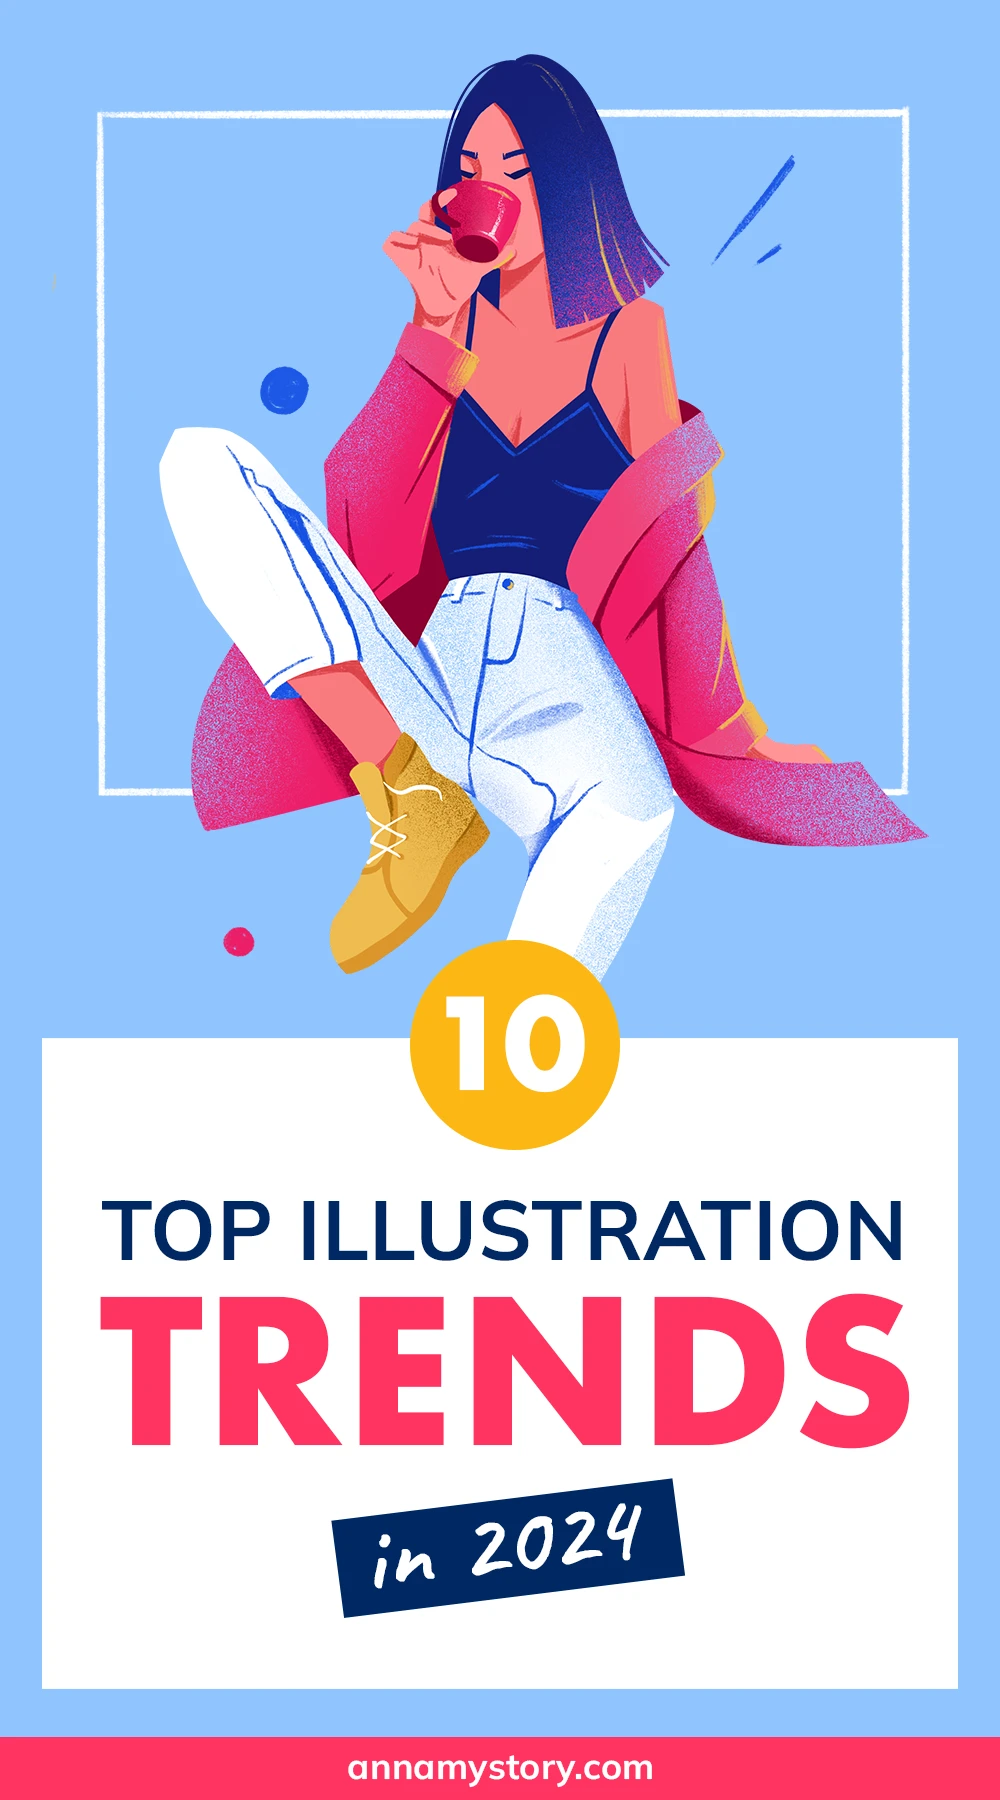 Illustration trends 2024 by Anniko - for pinterest